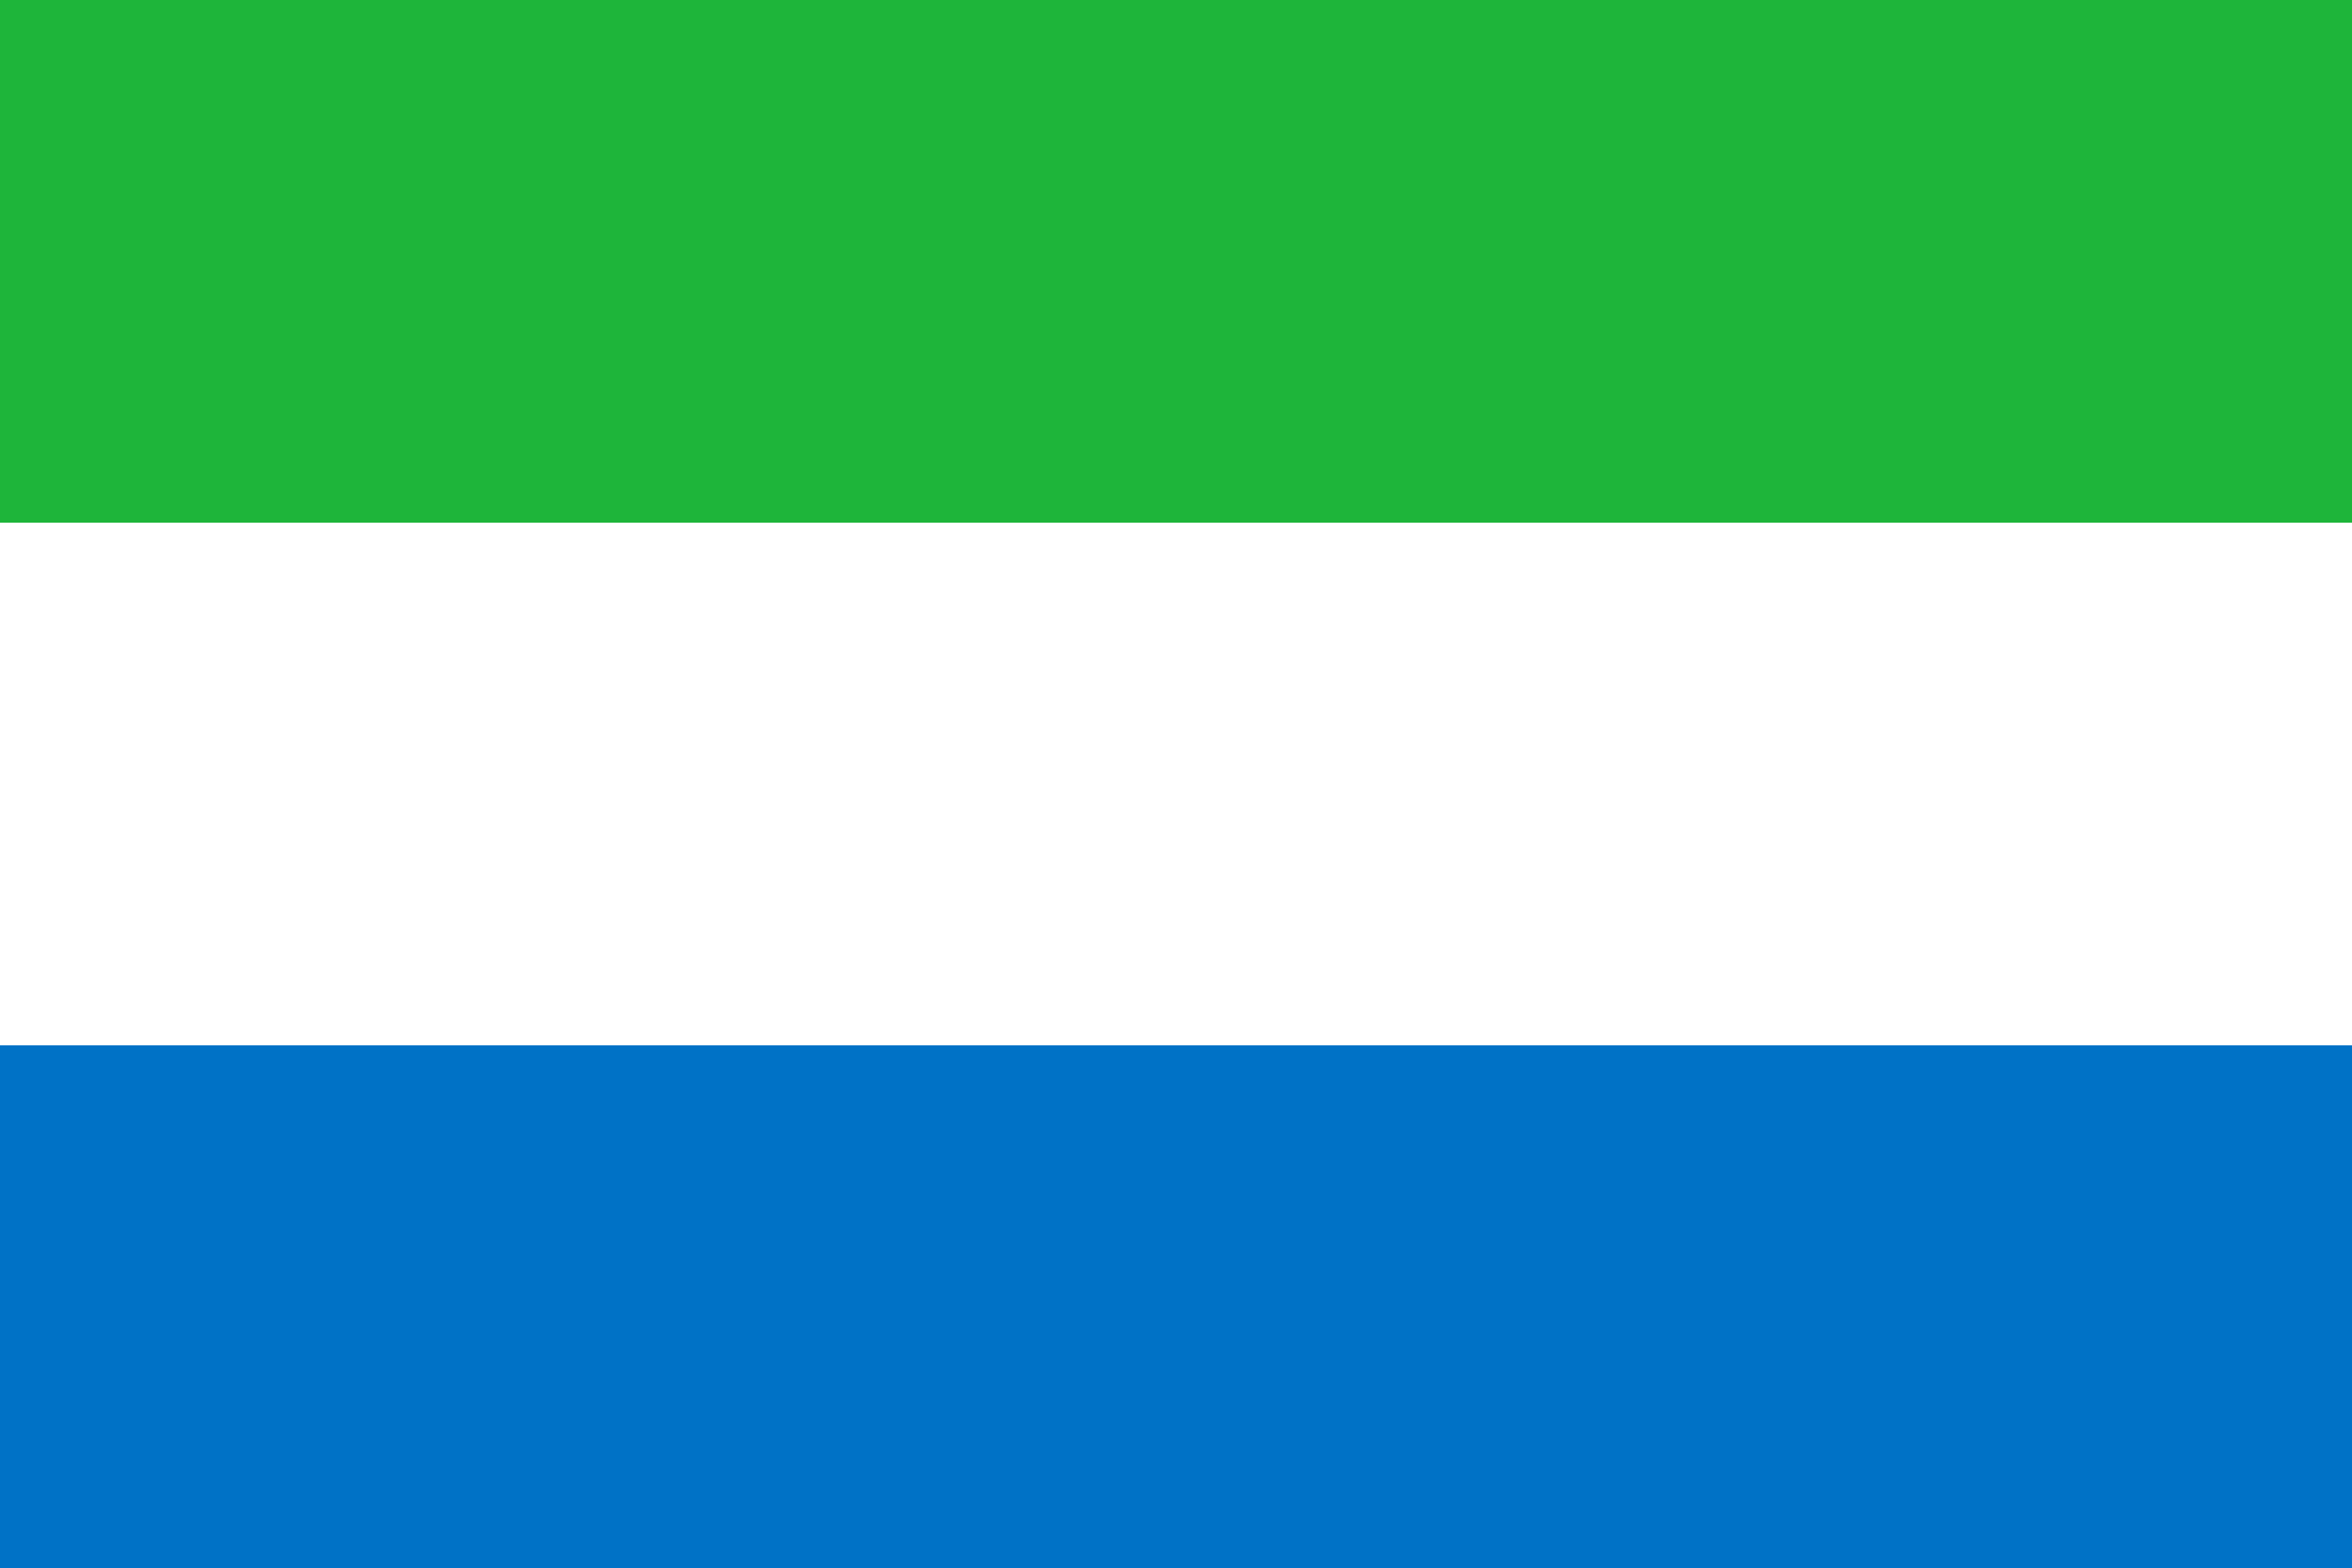 Drone Laws in Sierra Leone